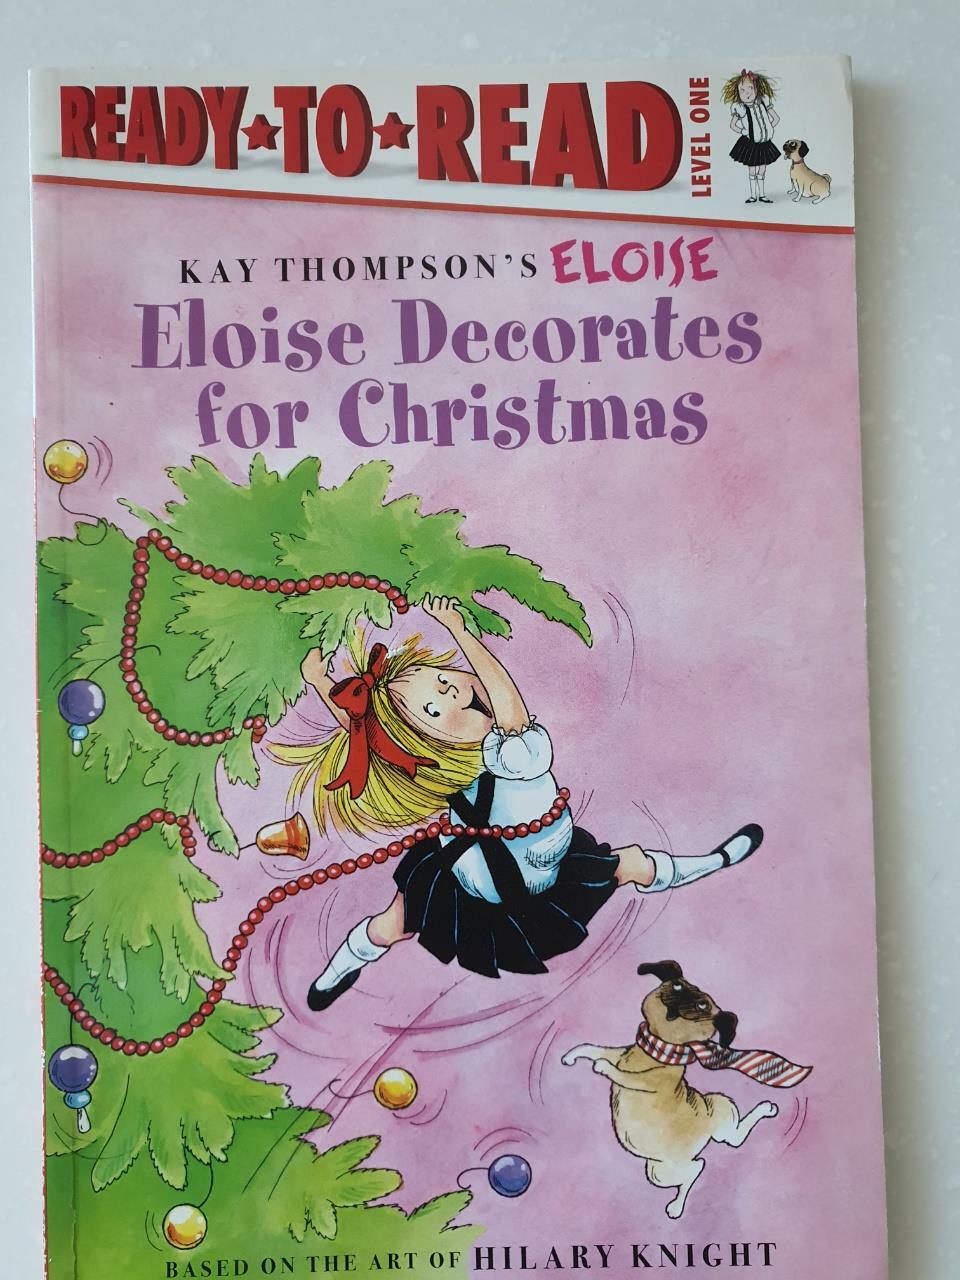 [중고] Eloise Decorates for Christmas: Ready-To-Read Level 1 (Paperback)